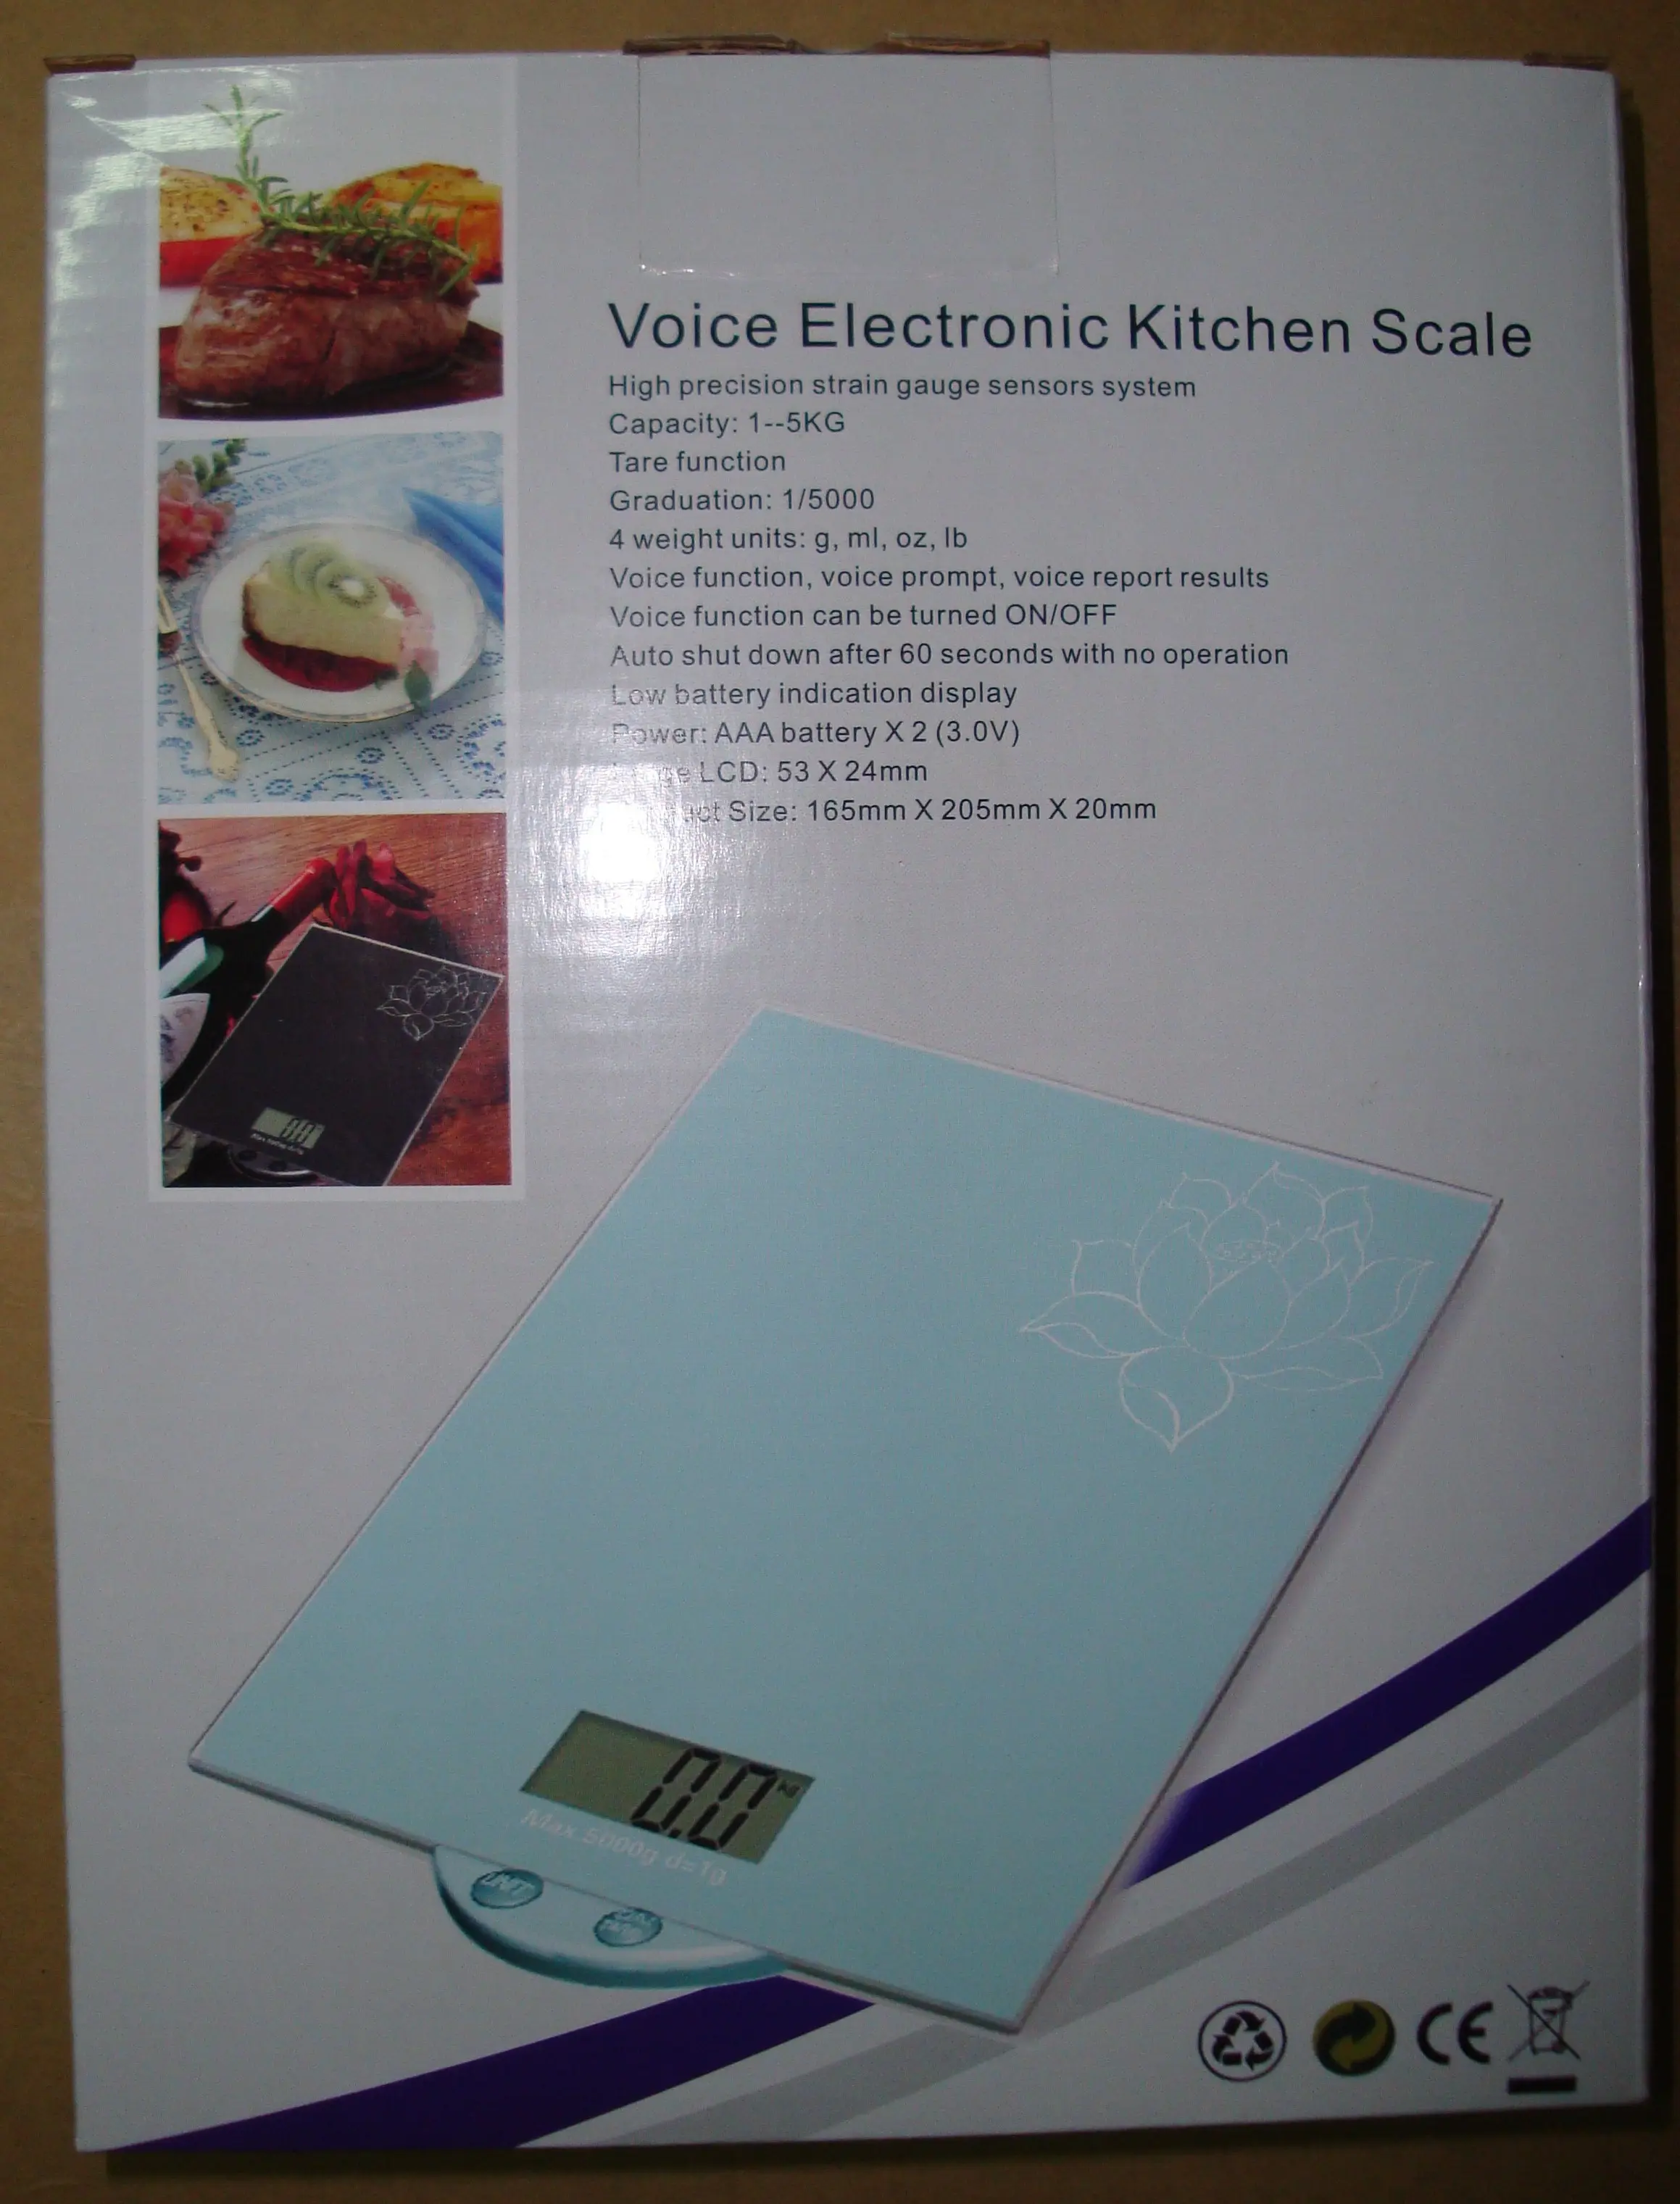 Sprechende Küchen waage für Lebensmittel Multifunktions-Sprech waage Maßnahmen in Gramm und Unzen Visuelle und Sprach-LCD-Anzeige waage